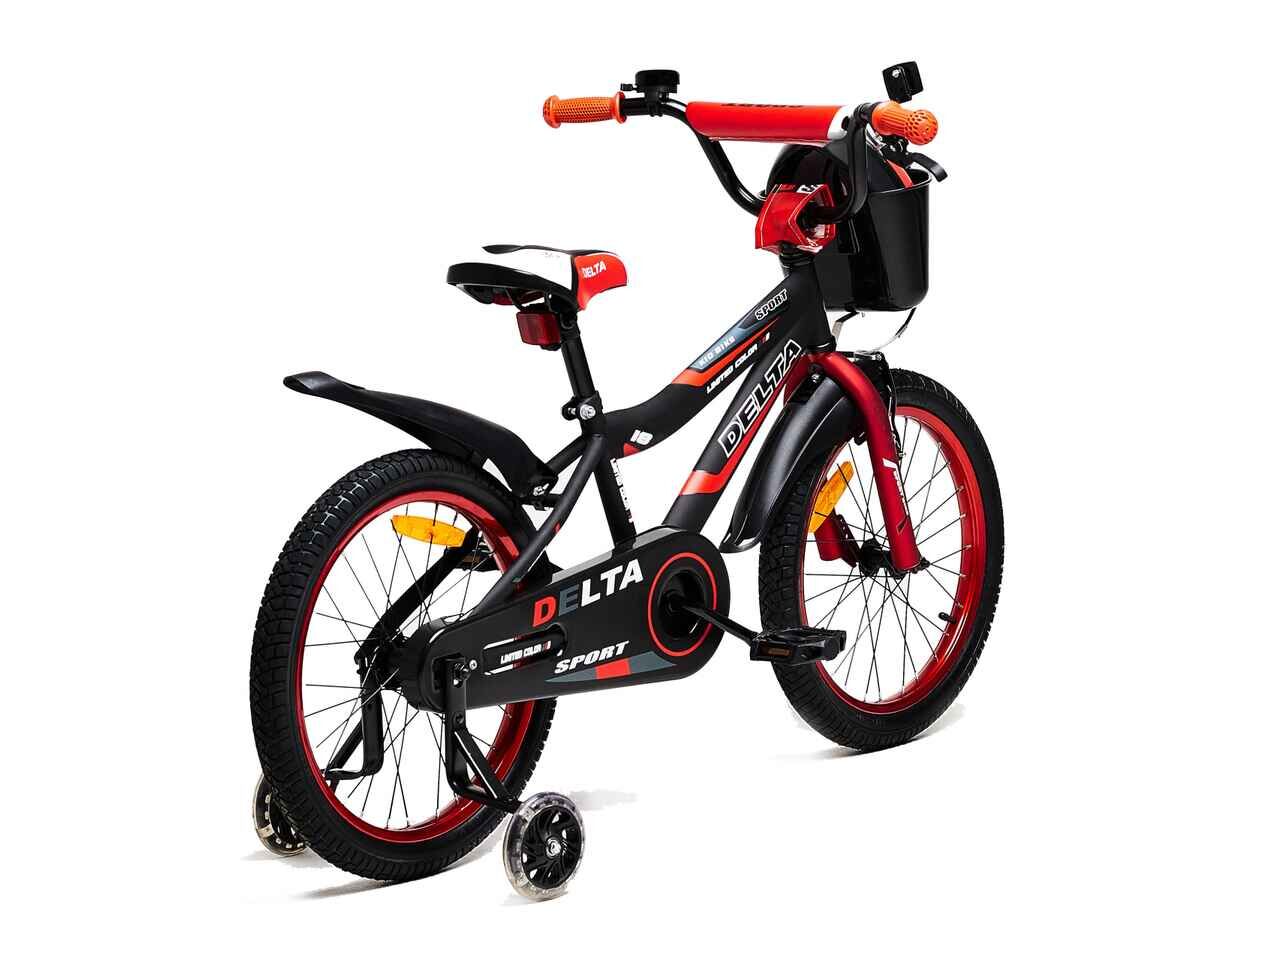 Детский велосипед DELTA Sport 20 (черный/красный, 2020)